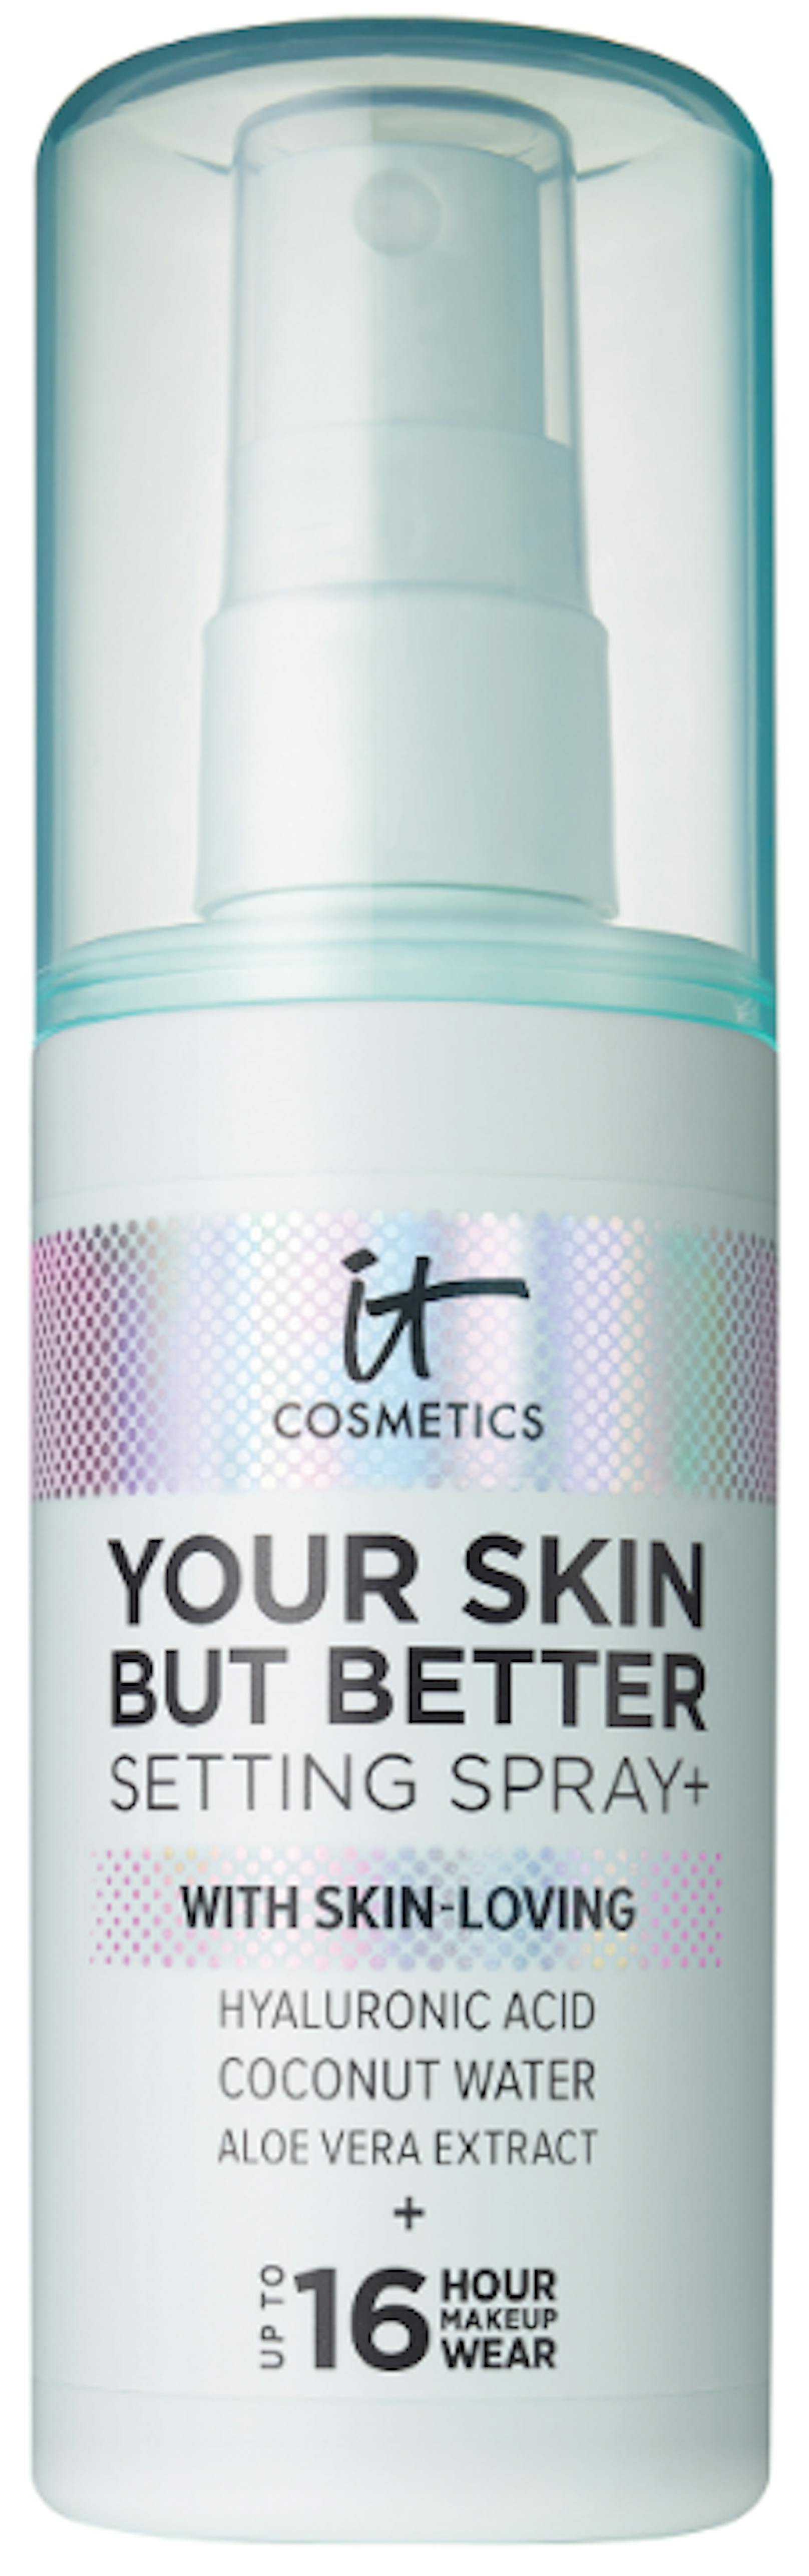 Der "Your Skin But Better Setting Spray" von IT&nbsp;Cosmetics um 29 Euro fixiert das gesamte Make-up und versorgt die Haut gleichzeitig mit Feuchtigkeit.